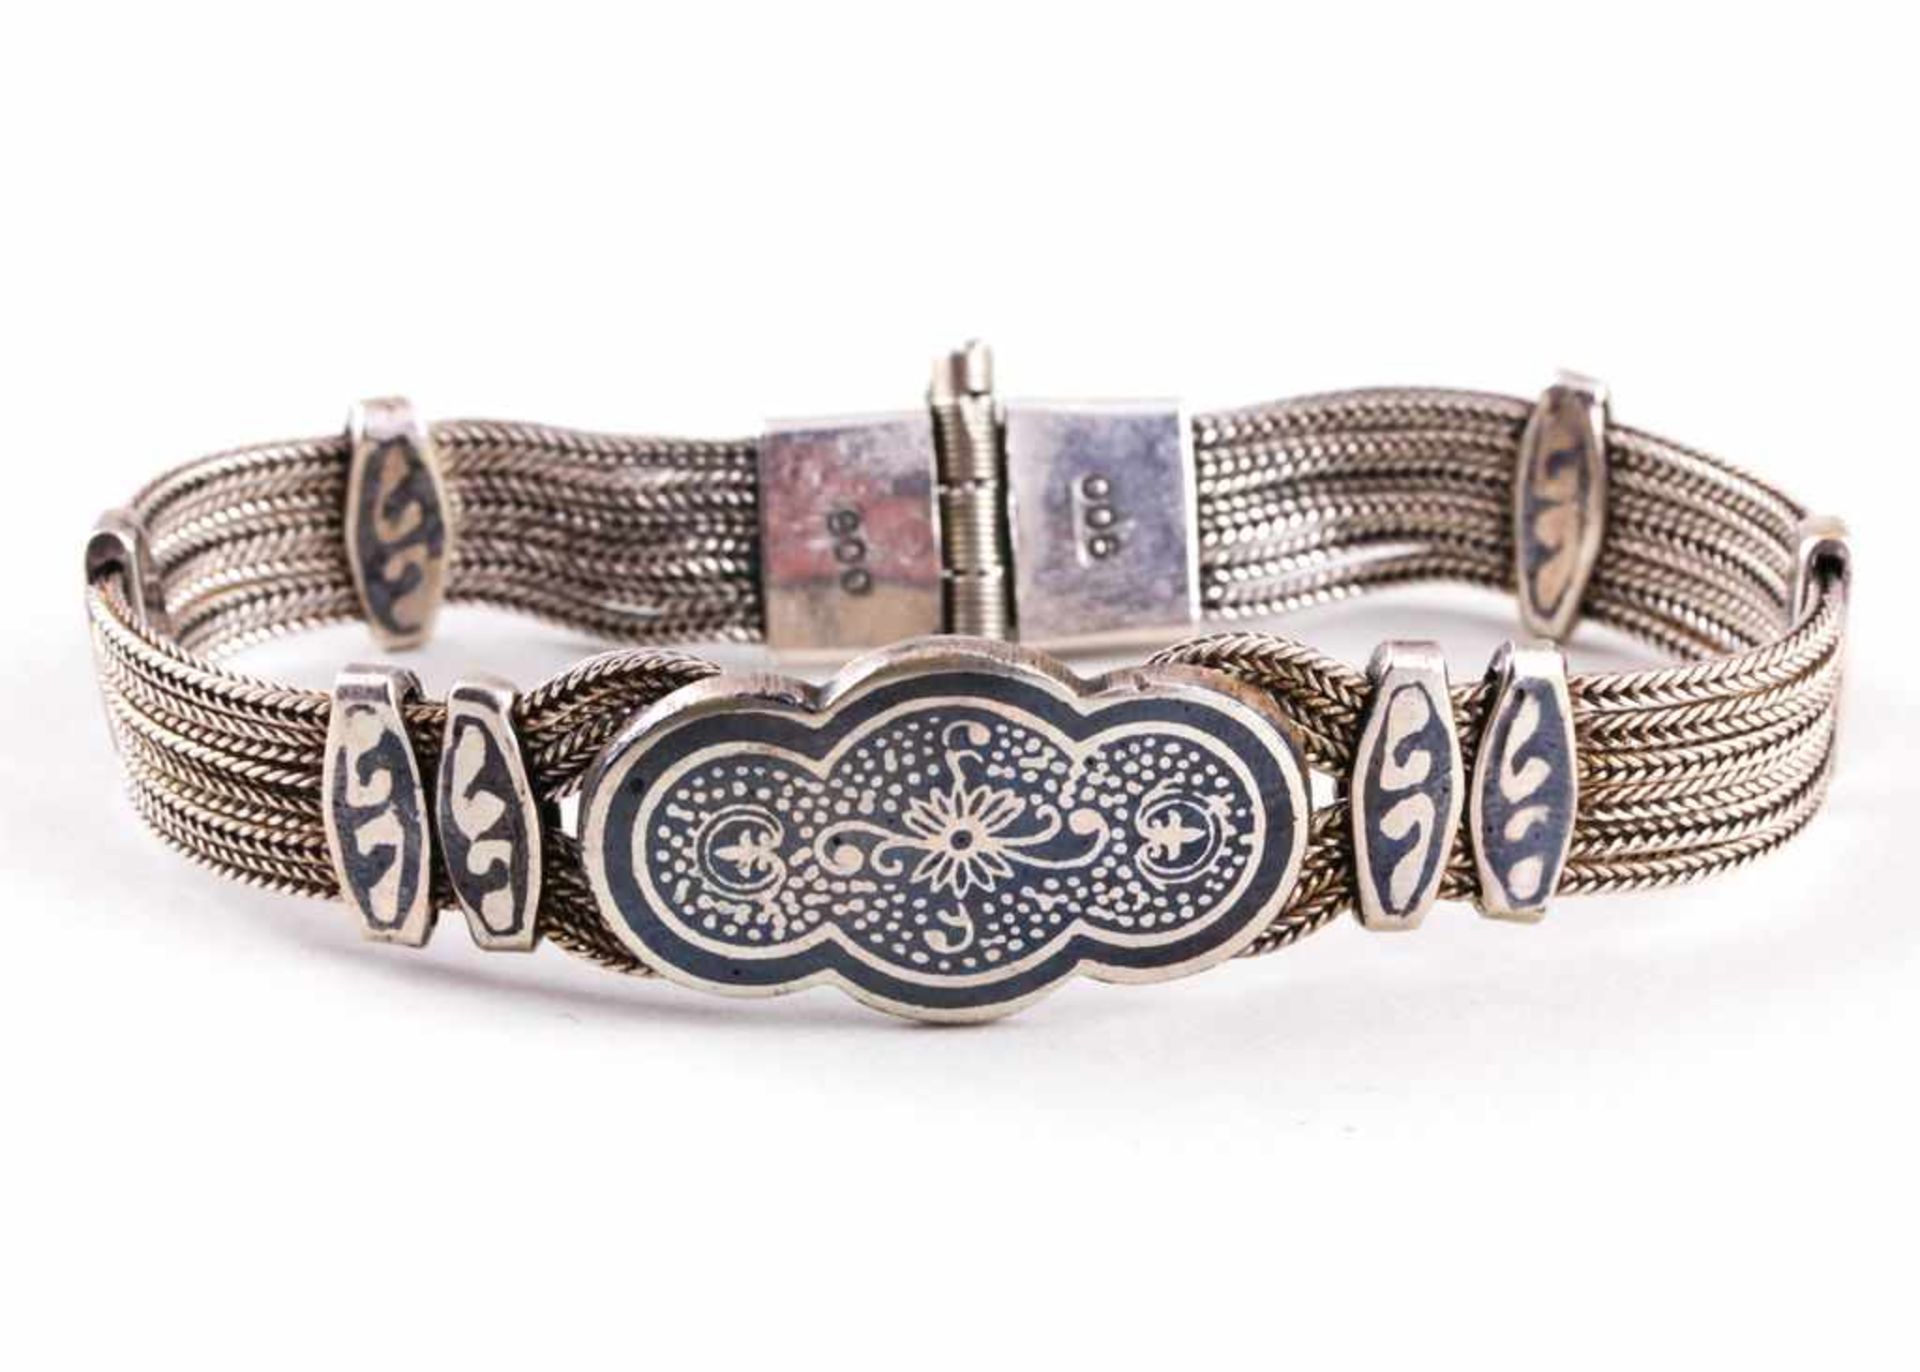 Armband.900/000 Silber, 26 g. In Niello floral bzw. ornamental eingelegte Glieder auf Band aus 6